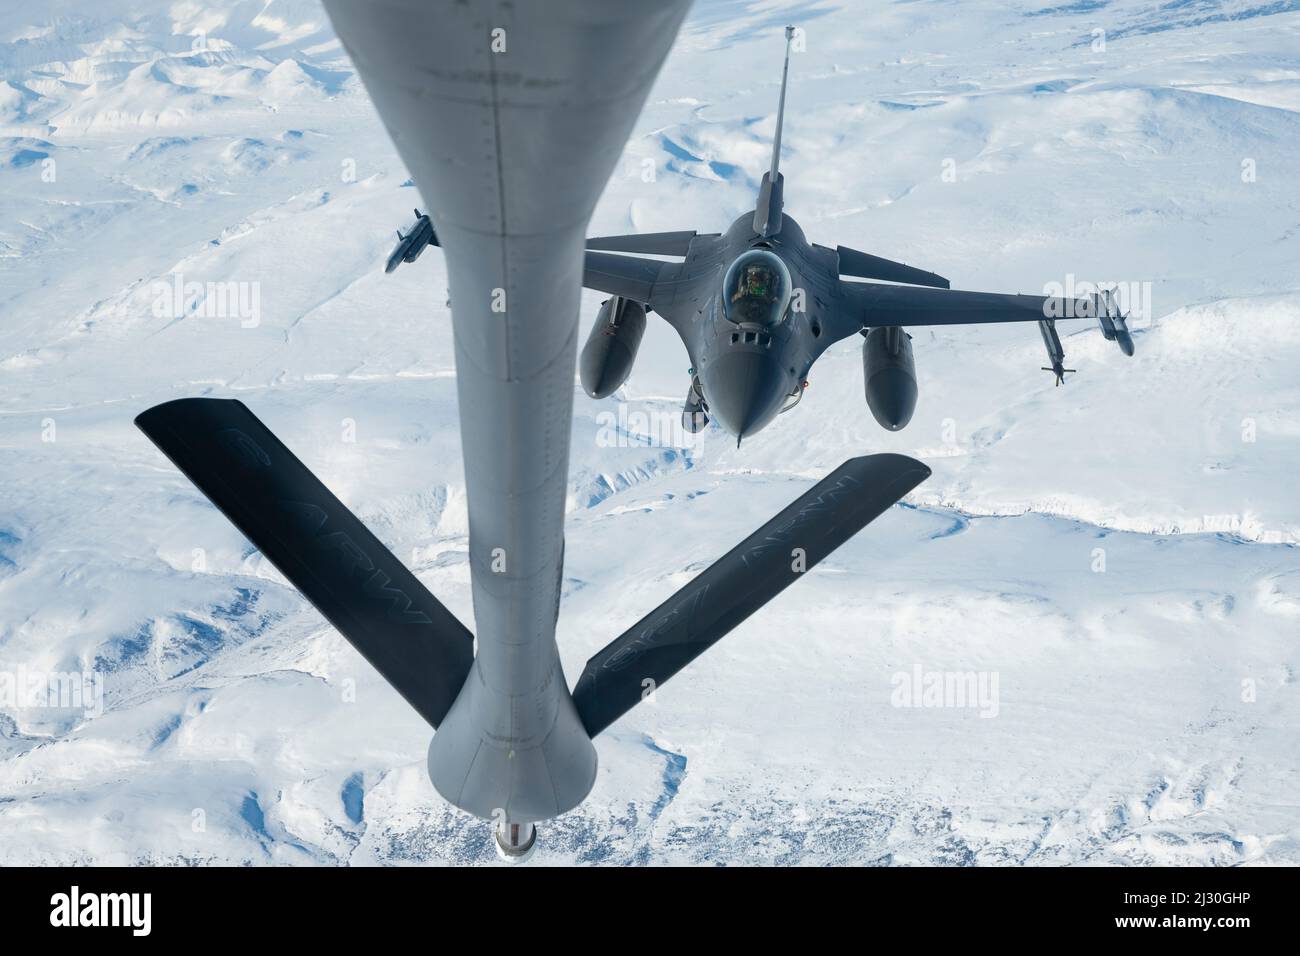 16 de marzo de 2022 - Base Conjunta Elmendorf-Richardson, Alaska, EE.UU. - Un halcón de combate de la Fuerza Aérea de EE.UU. F-16, asignado al ala de combate 180th Fighter, vuela a su posición para ser reabastecido por un avión Stratotanker KC-135, asignado al escuadrón de repostaje de aire de 97th, durante el ejercicio 2022 DEL COMANDO Norte de EE.UU., 15 de marzo de 2022. AE22 es un ejercicio bienal de defensa para el Comando Norte de los Estados Unidos y las Fuerzas Armadas Canadienses para demostrar y ejercer una capacidad conjunta para desplegar y operar rápidamente en el Ártico. (Imagen de crédito: © U.S. Air Force/ZUMA Press Wire Service/ZUMAPRESS.com) Foto de stock